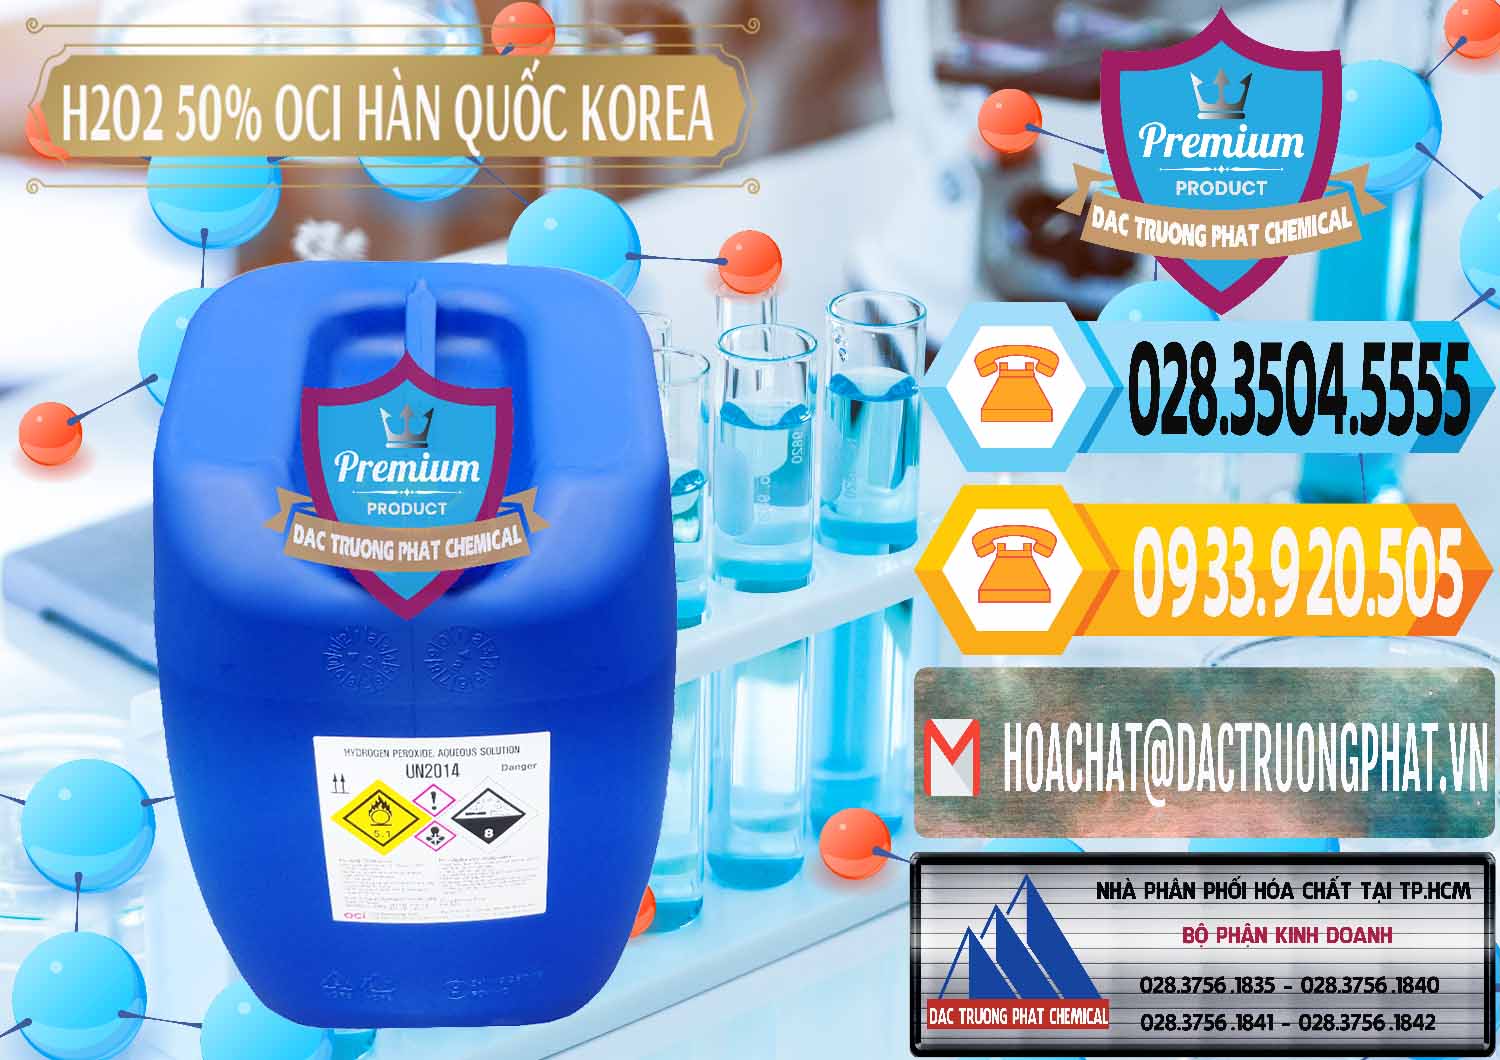 Đơn vị nhập khẩu - bán H2O2 - Hydrogen Peroxide 50% OCI Hàn Quốc Korea - 0075 - Nơi nhập khẩu và cung cấp hóa chất tại TP.HCM - hoachattayrua.net